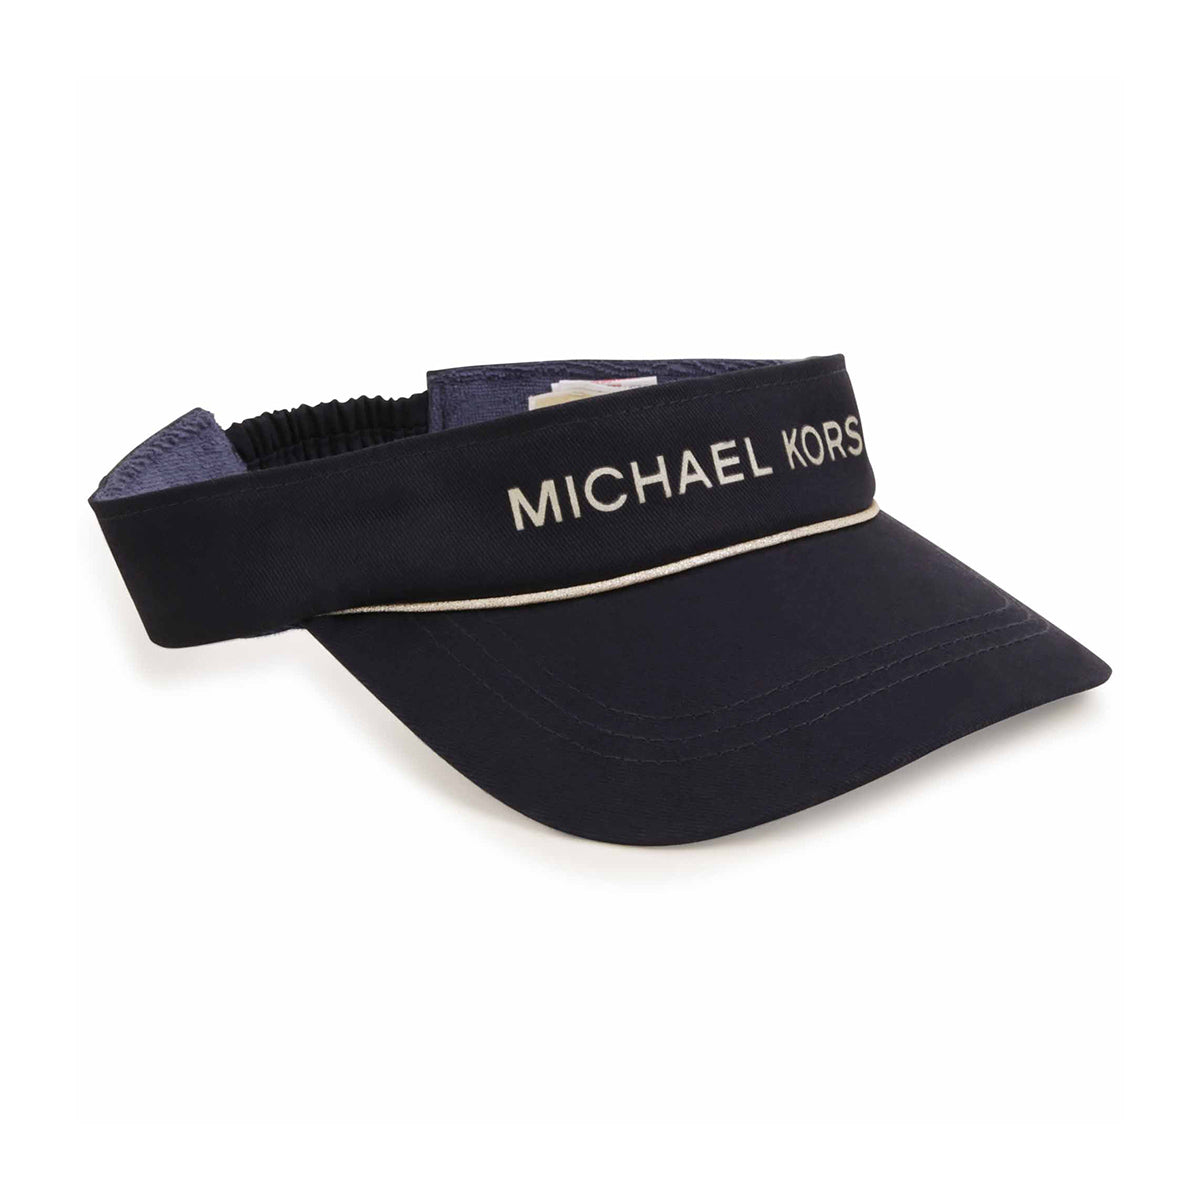 כובע מצחייה MICHAEL KORS לוגו זהב לתינוקות